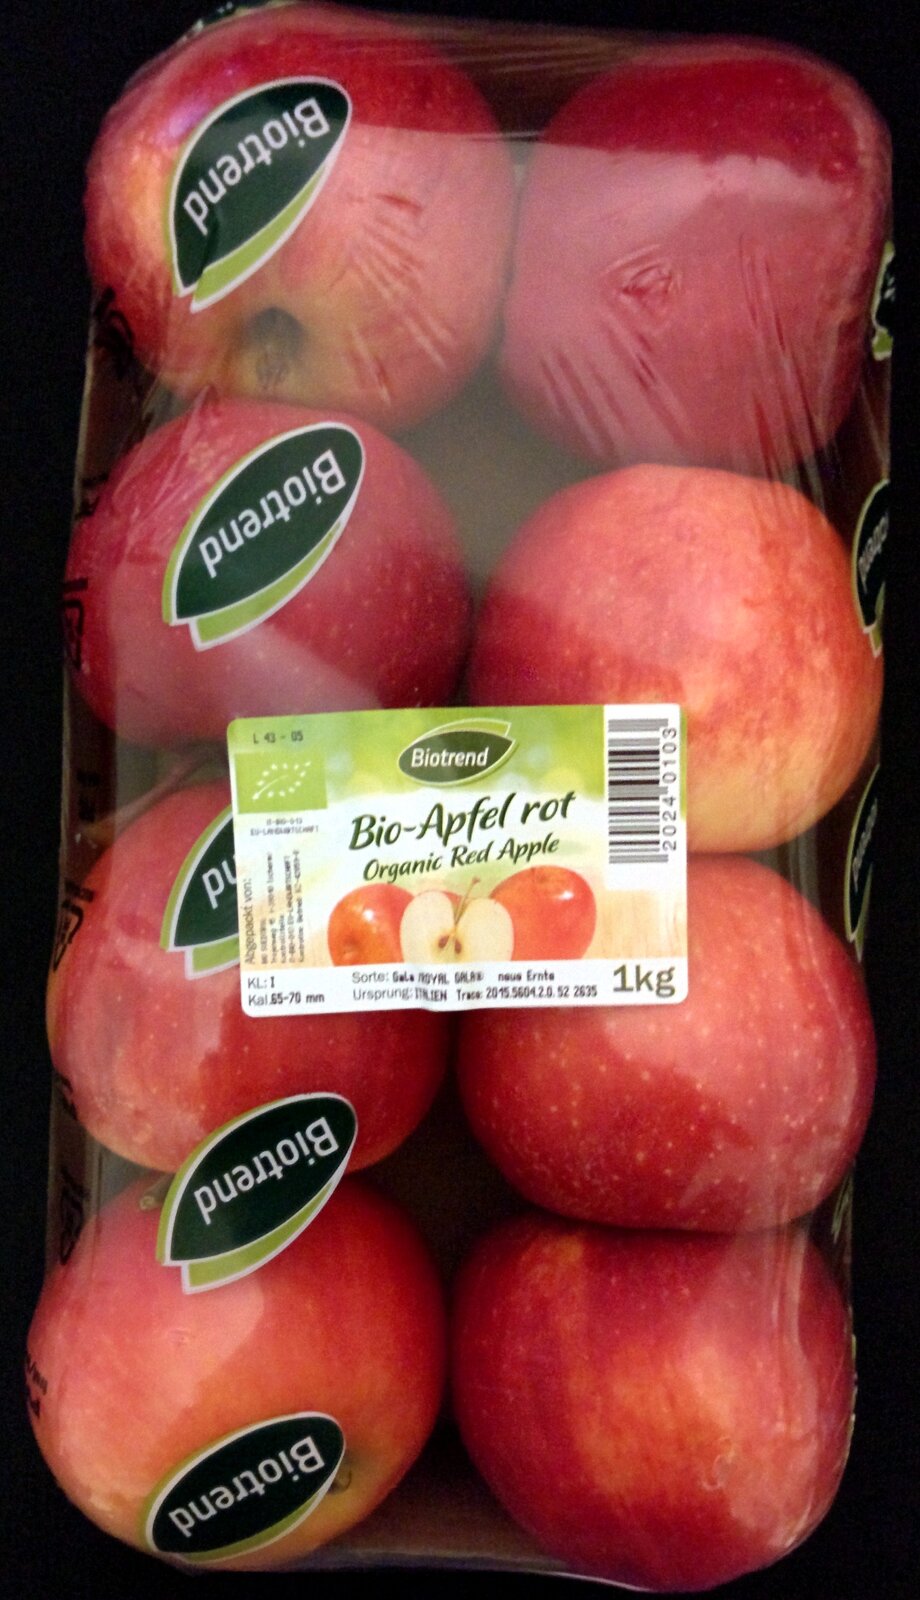 Na ilustracji widnieje szalka 8 jabłek pochodzących z Niemczech. Są one koloru czerwono-pomarańczowego. 